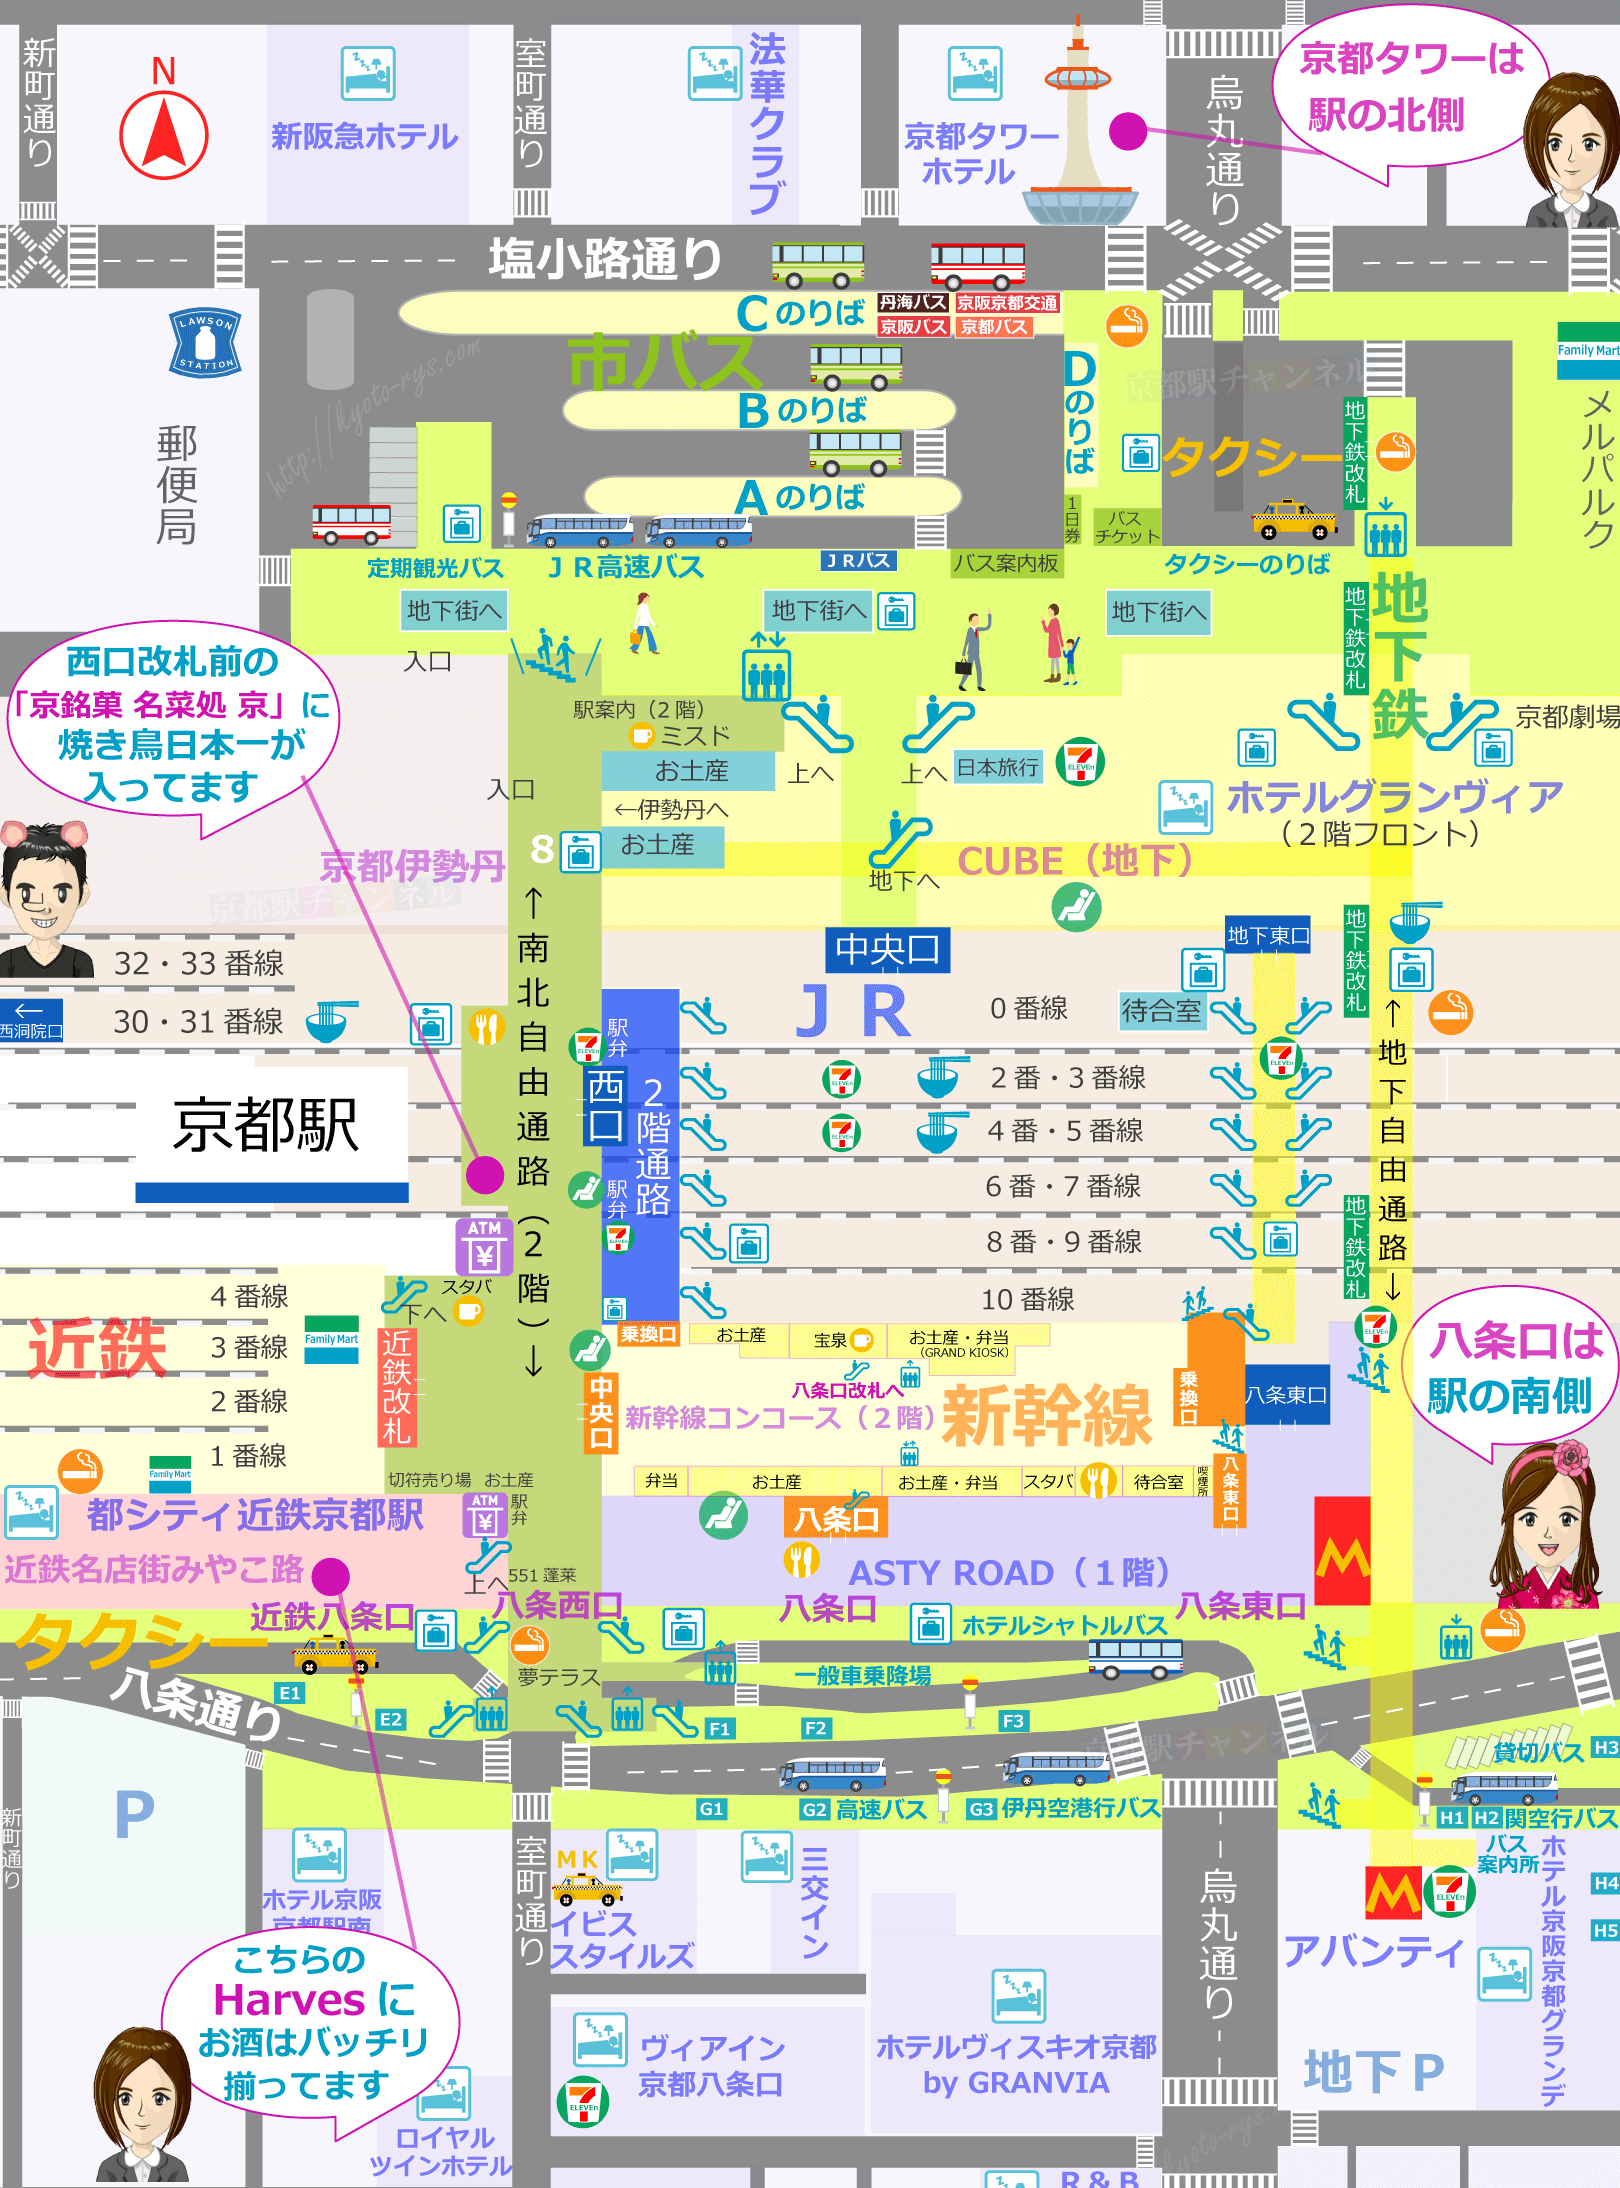 京都麦酒や柚子、梅酎ハイ、日本酒が買える京都駅の販売店マップ